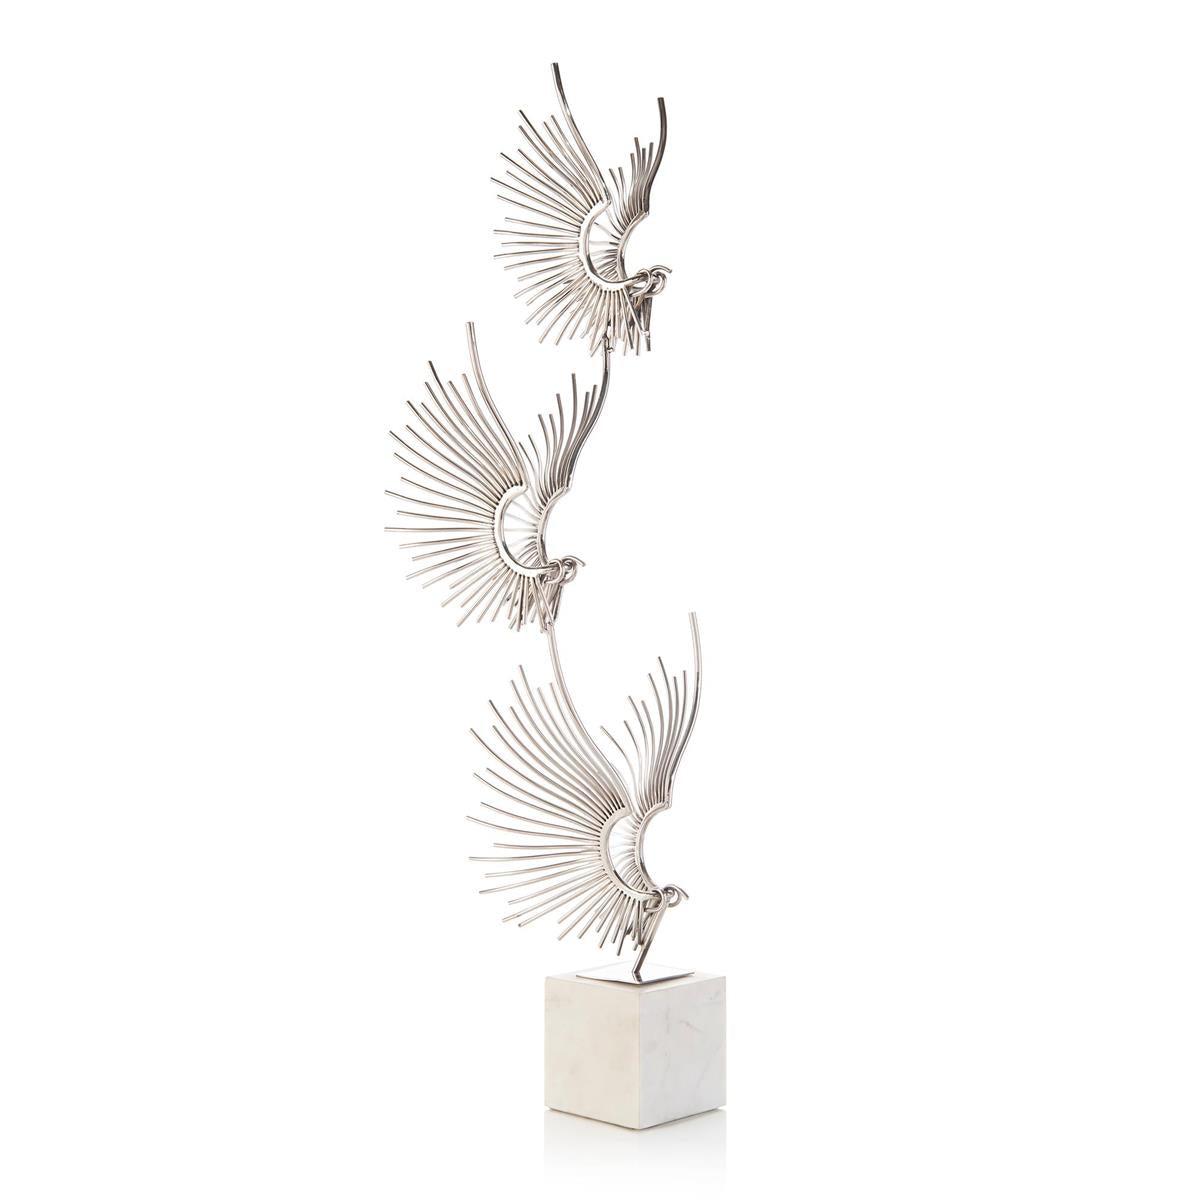 Sculpted Birds in Flight-John Richard-Sculptures & Objects-Artistic Elements